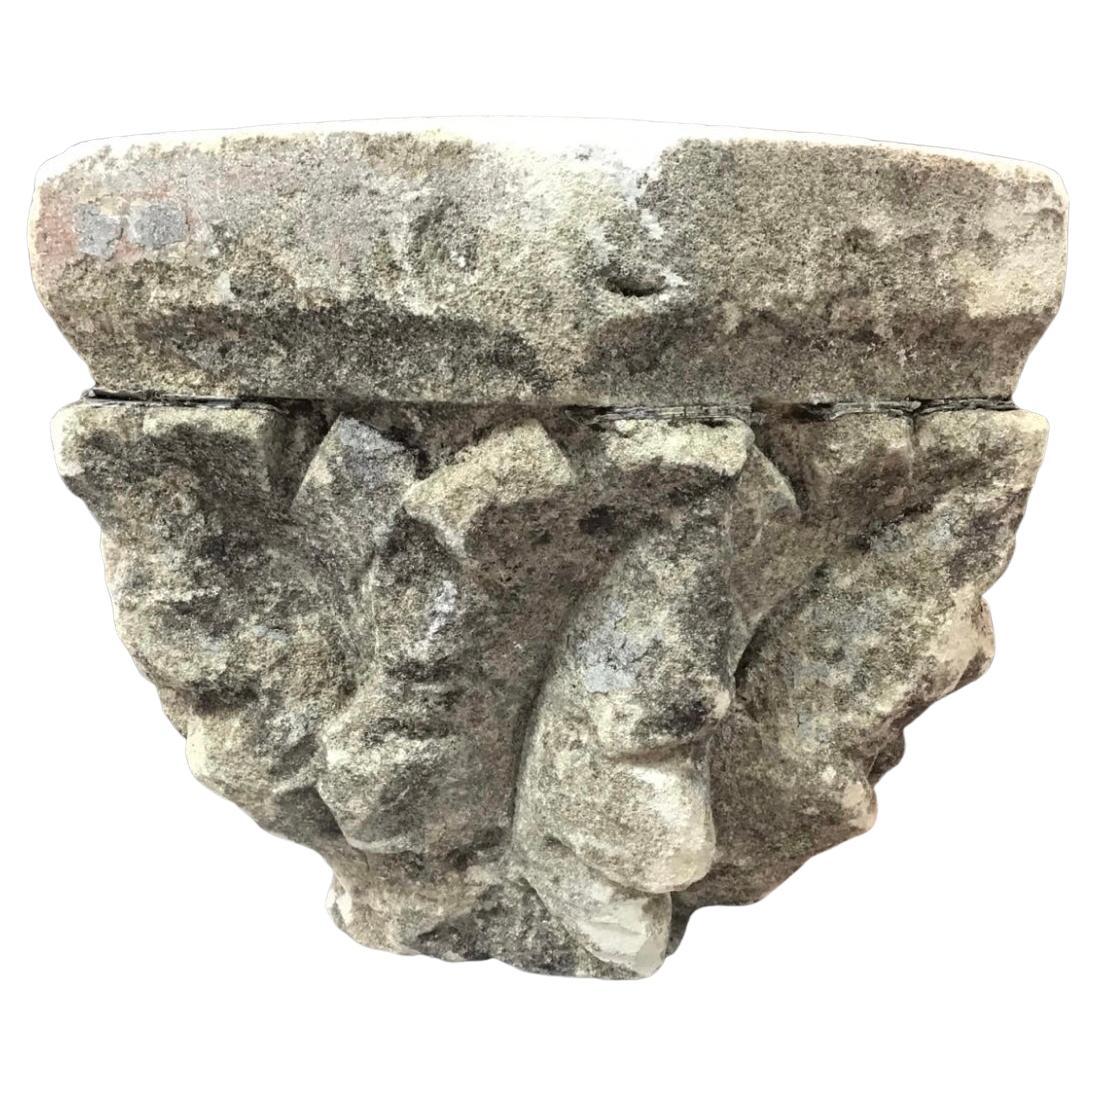 Das seltene Fragment stammt aus dem 17. Jahrhundert und hätte auf einer Säule gestanden. Die Rückseite war am Gebäude befestigt und stützte höchstwahrscheinlich ein Gesims oder einen Bogen, wie sie in mittelalterlichen Gebäuden bis in die frühen